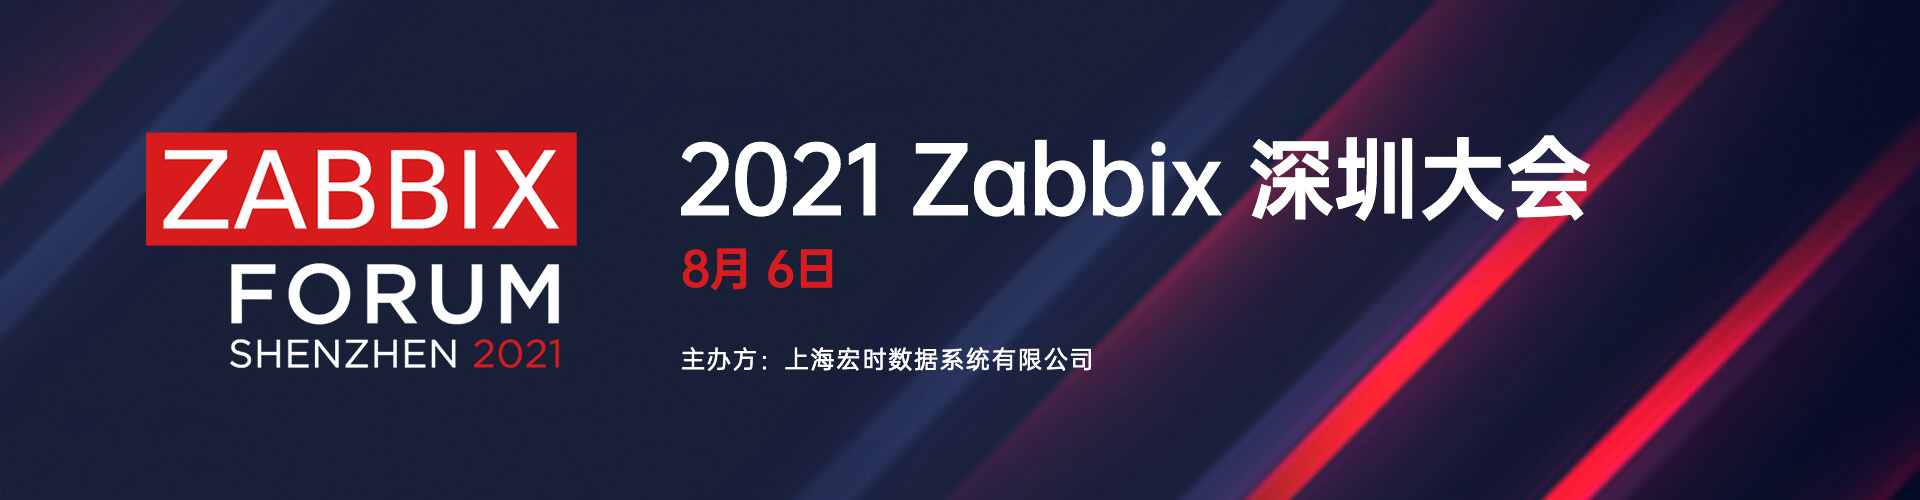 2021 Zabbix 深圳大会